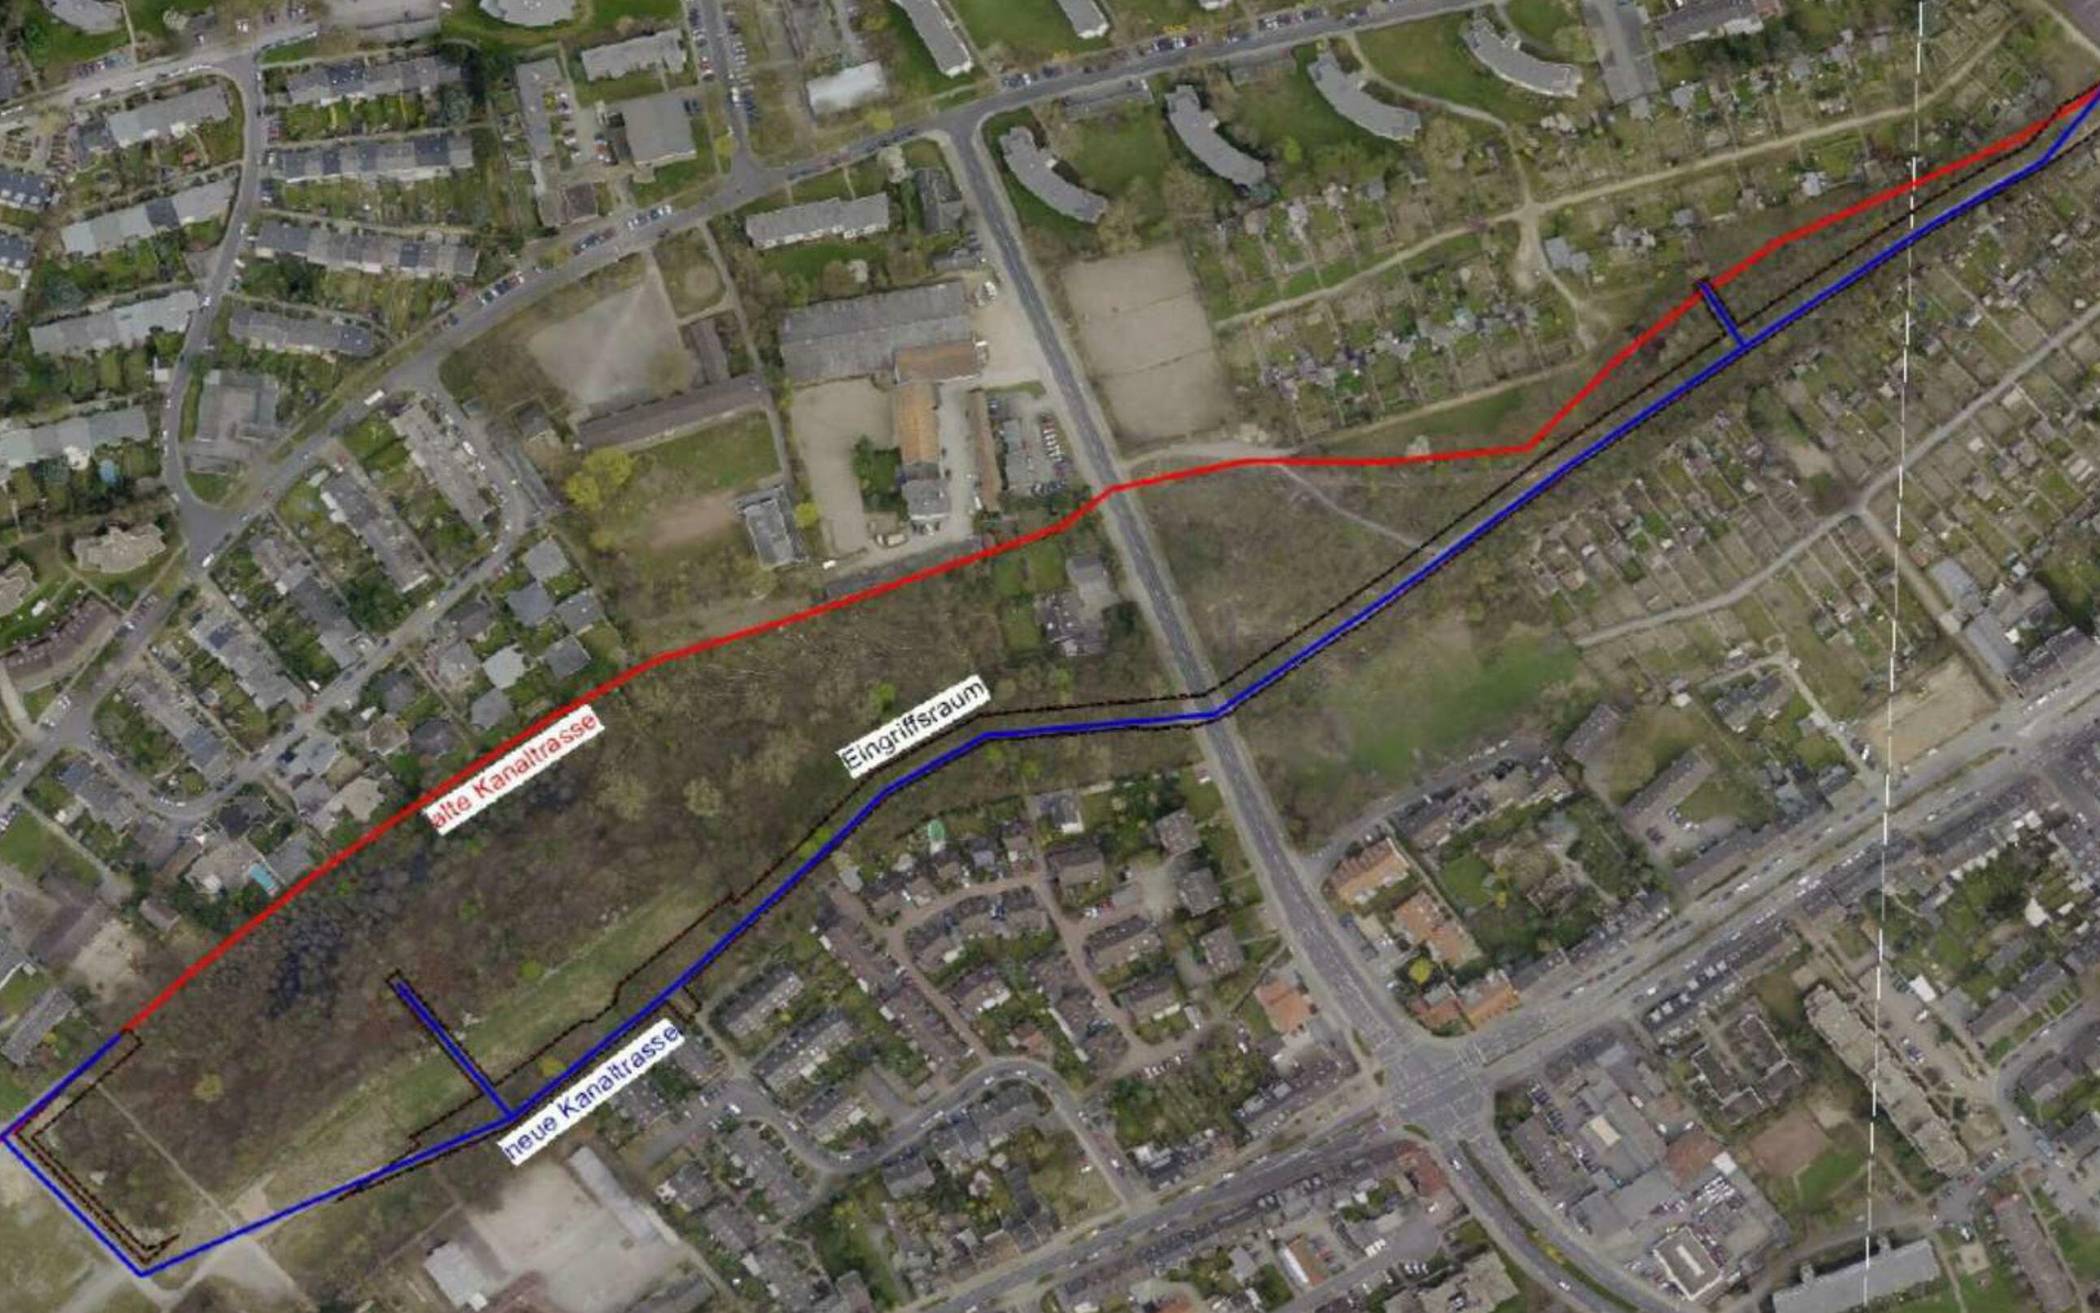 Die rote Linie zeigt den Verlauf der alten Kanaltrasse, die blaue Line den der neuen Kanaltrasse, die künftig unter dem Weg liegen soll.  